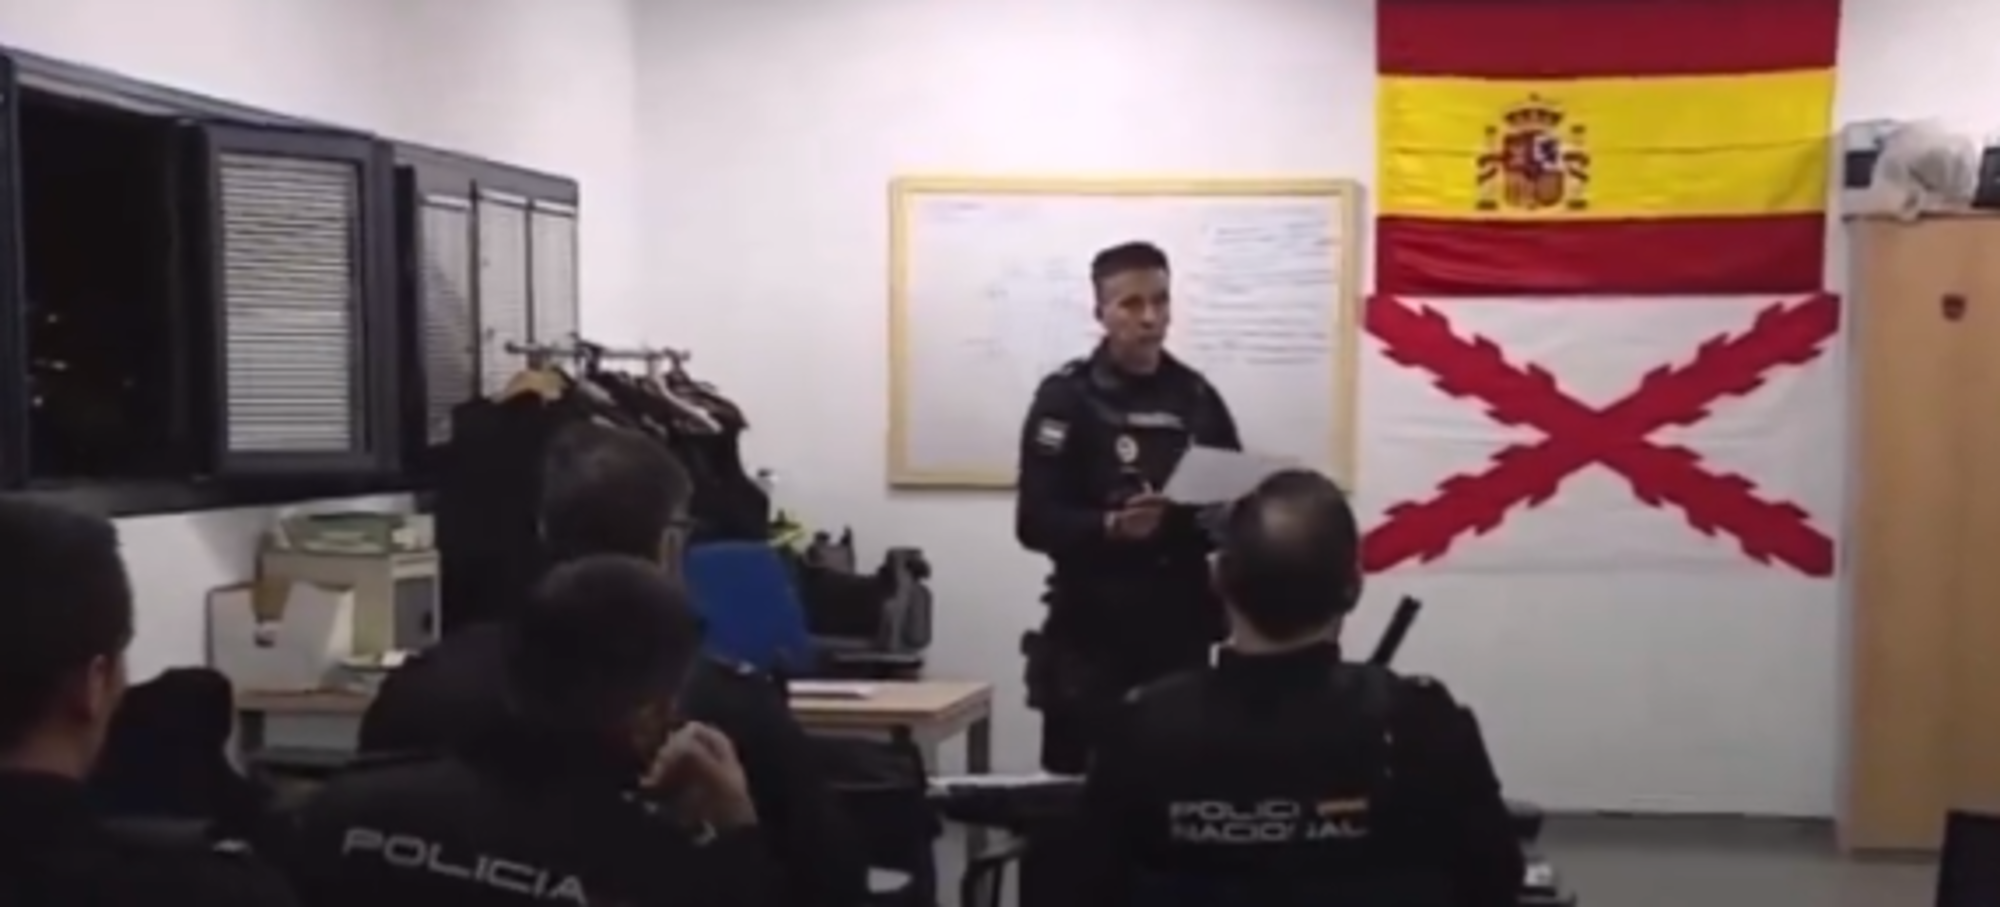 Indignación por la presencia de una bandera de ultraderecha en una comisaría de la Policía Nacional